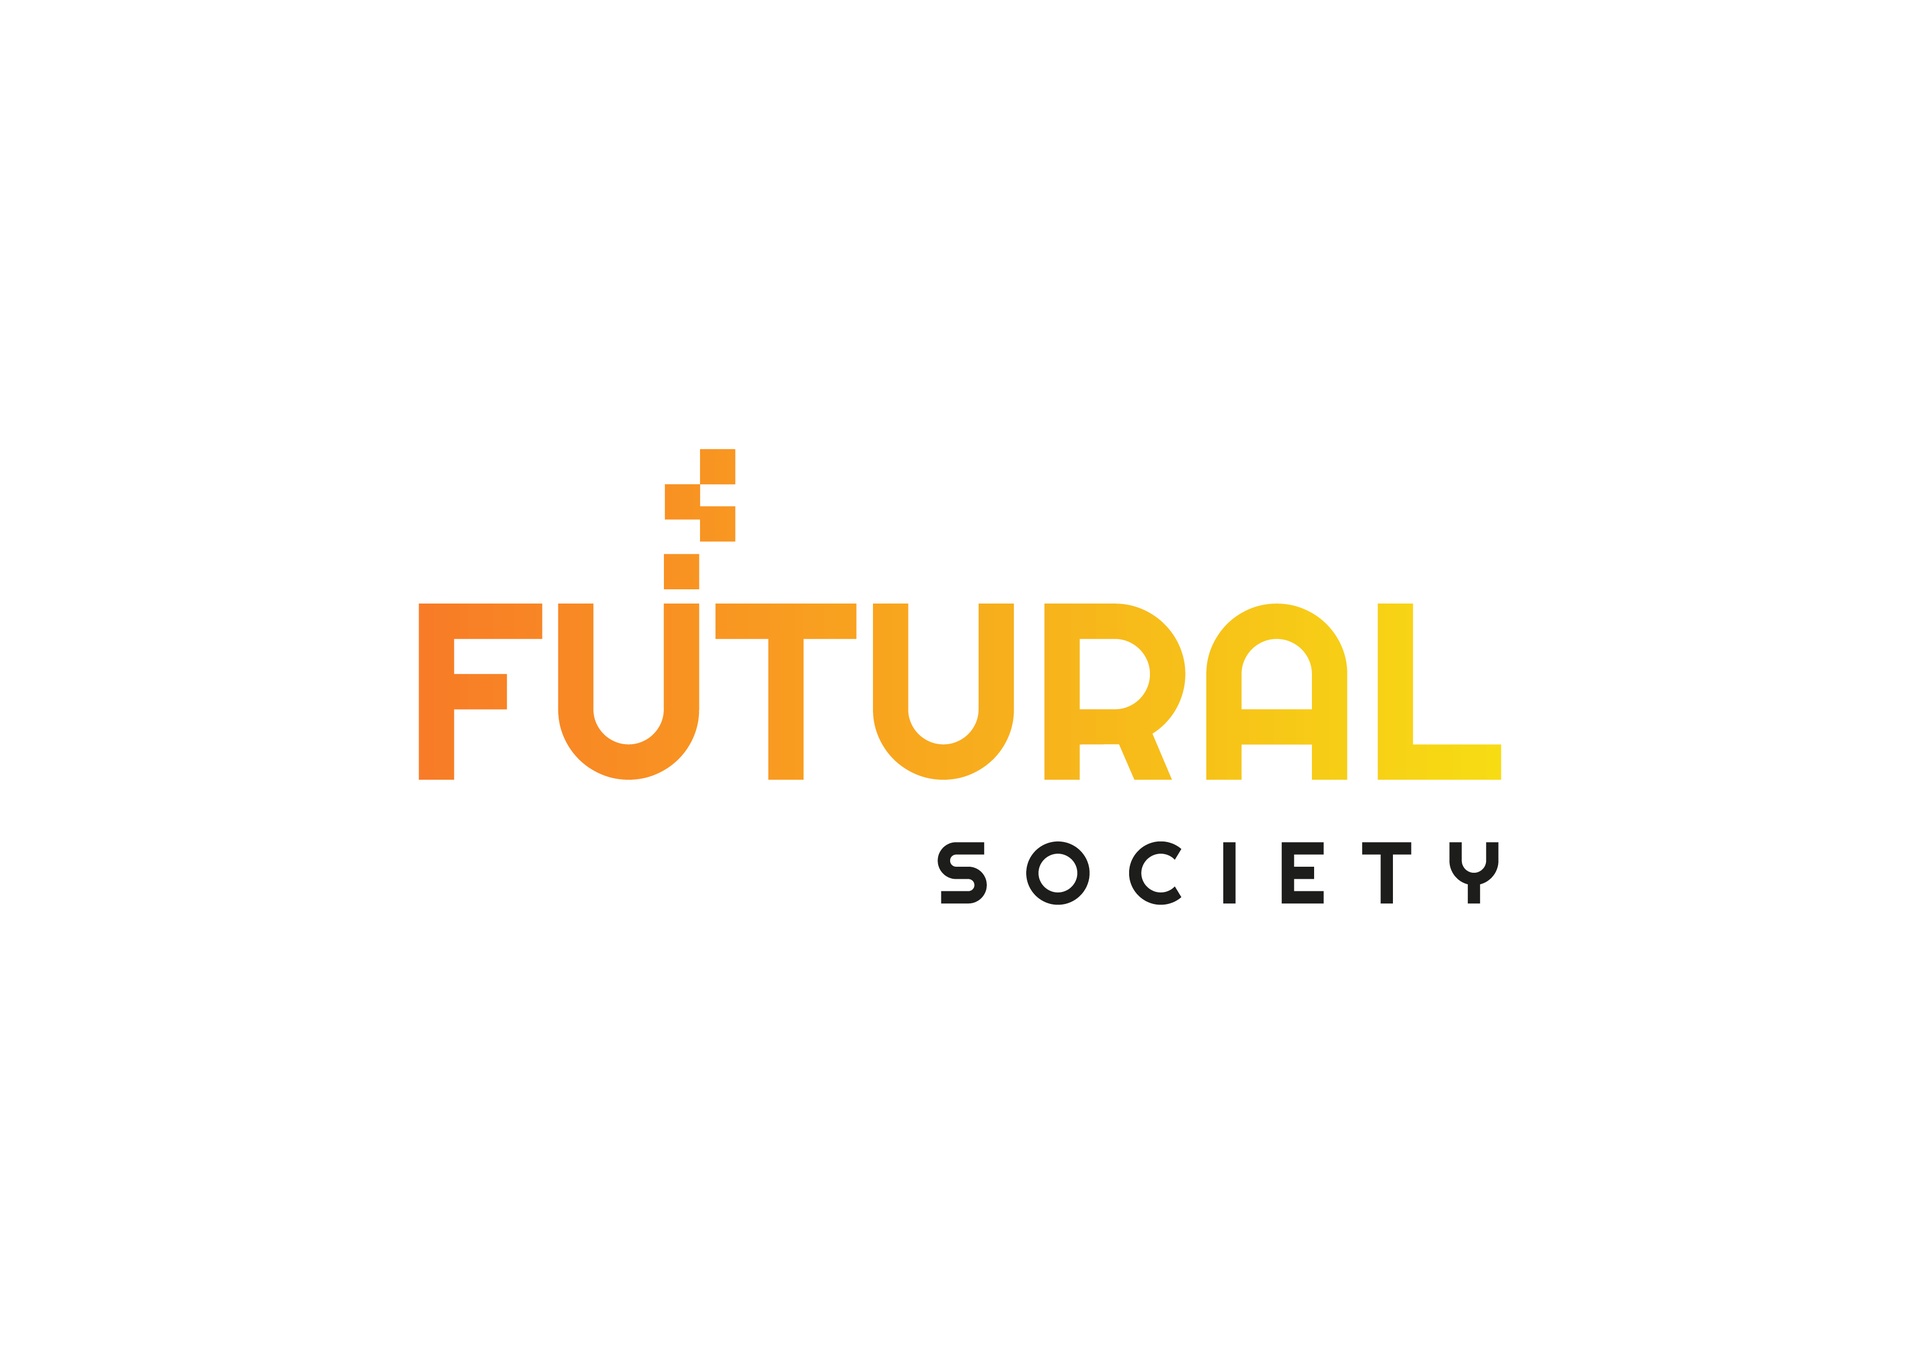 Futural Society